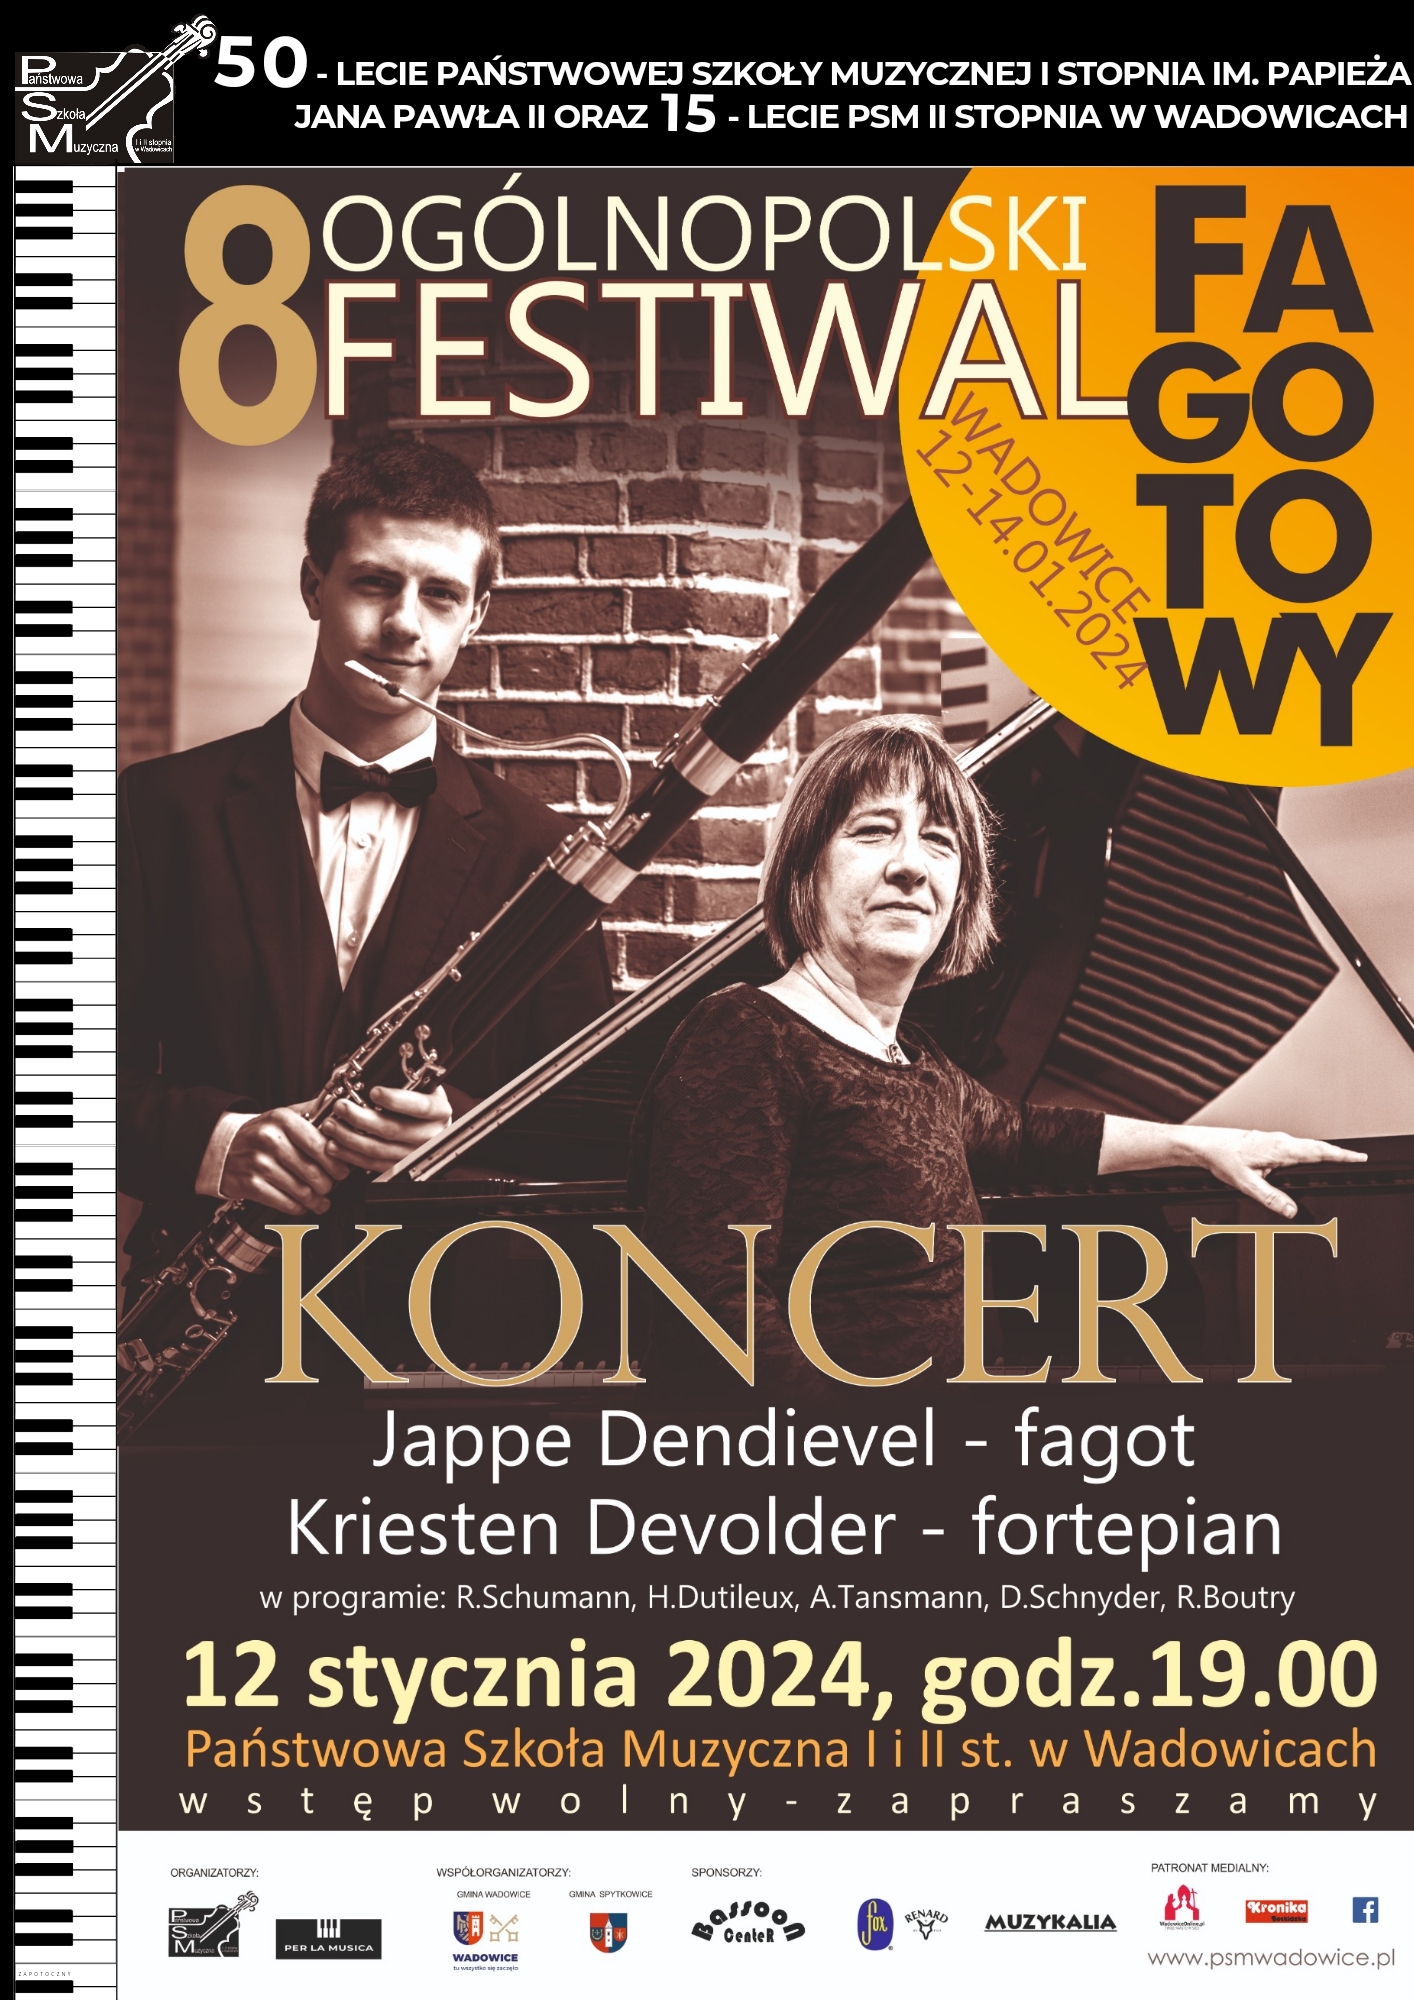 Koncert Jappe Dendievel i Kriesten Devolder 12.01.2024